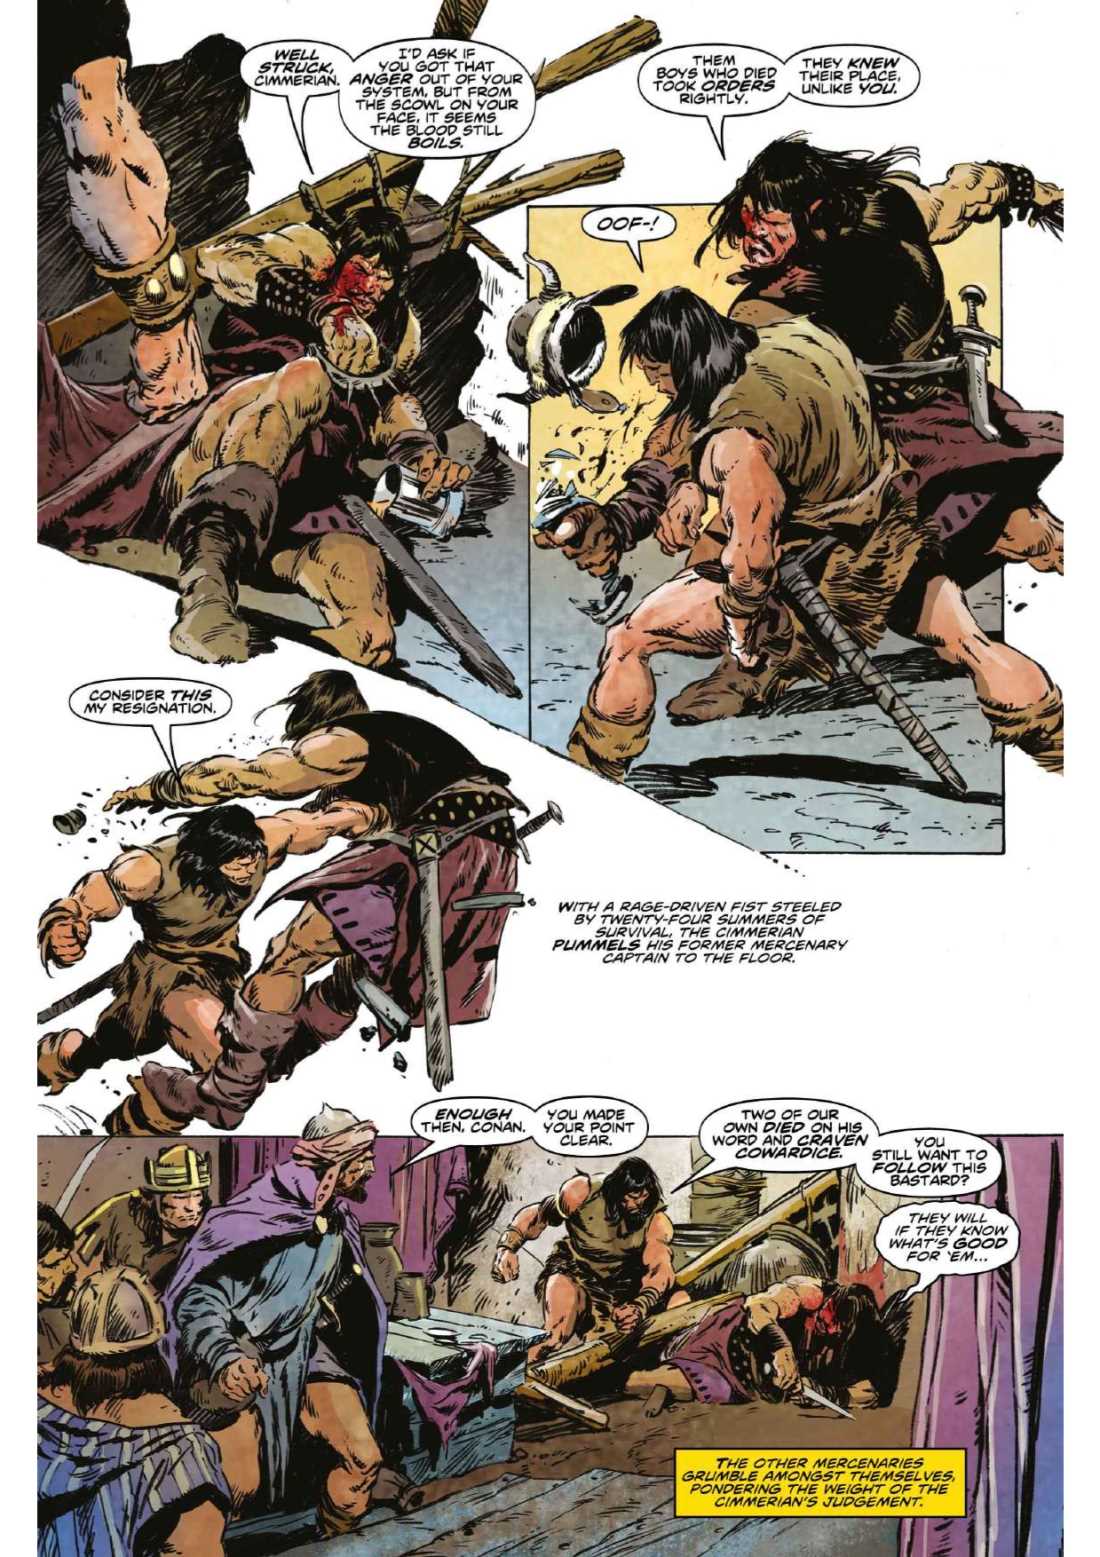 Conan the Barbarian from Titan Comics